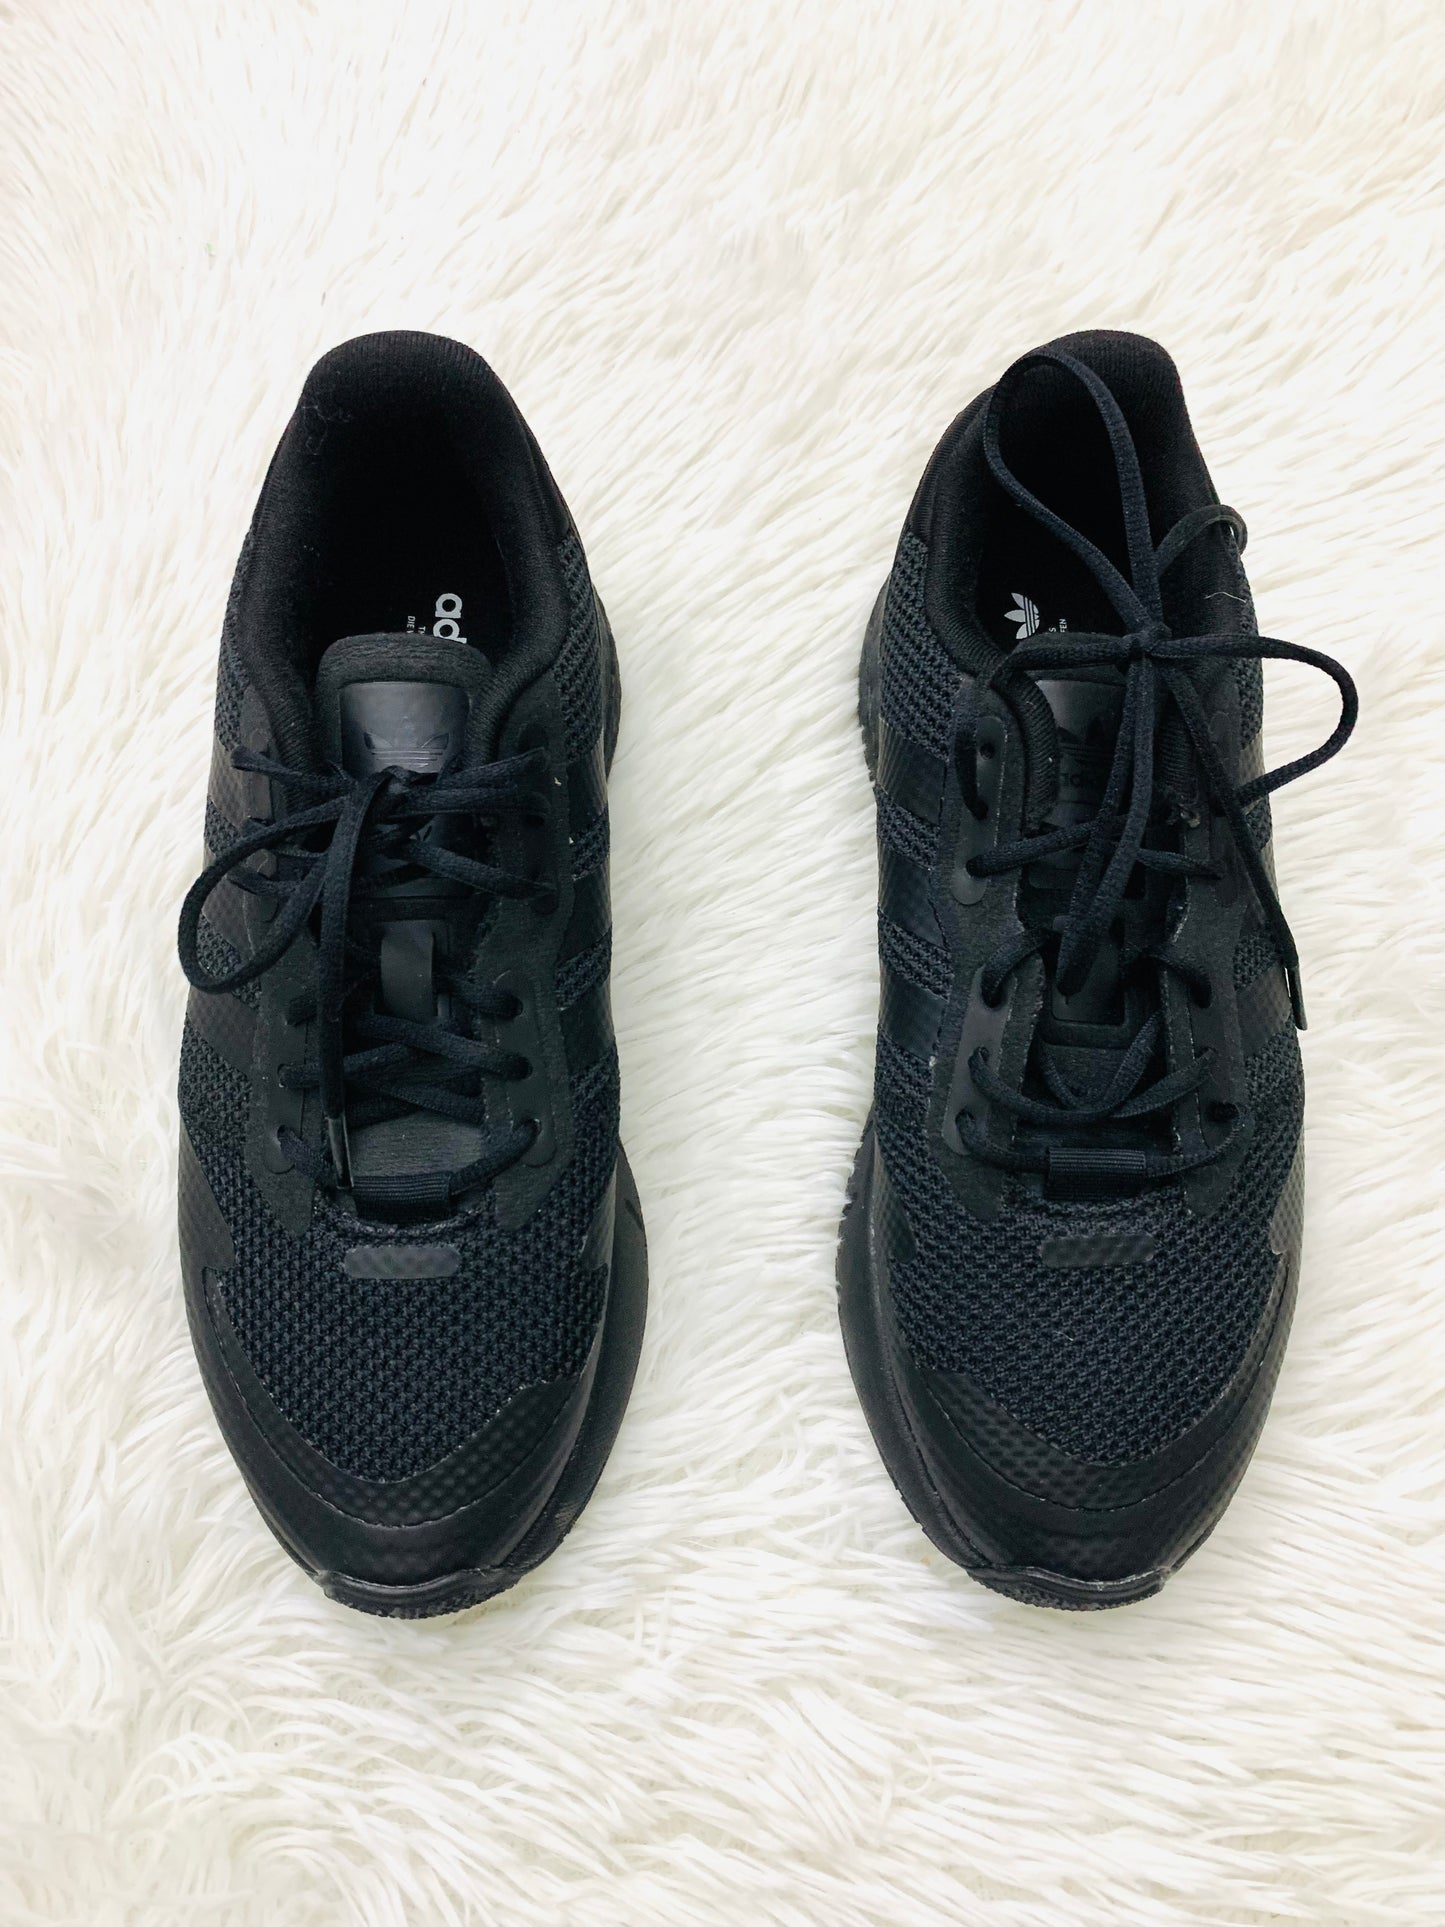 Tenis Adidas original en color negro con dópelos de a rayas negros y pequeño logo tipo de la marca ADIDAS